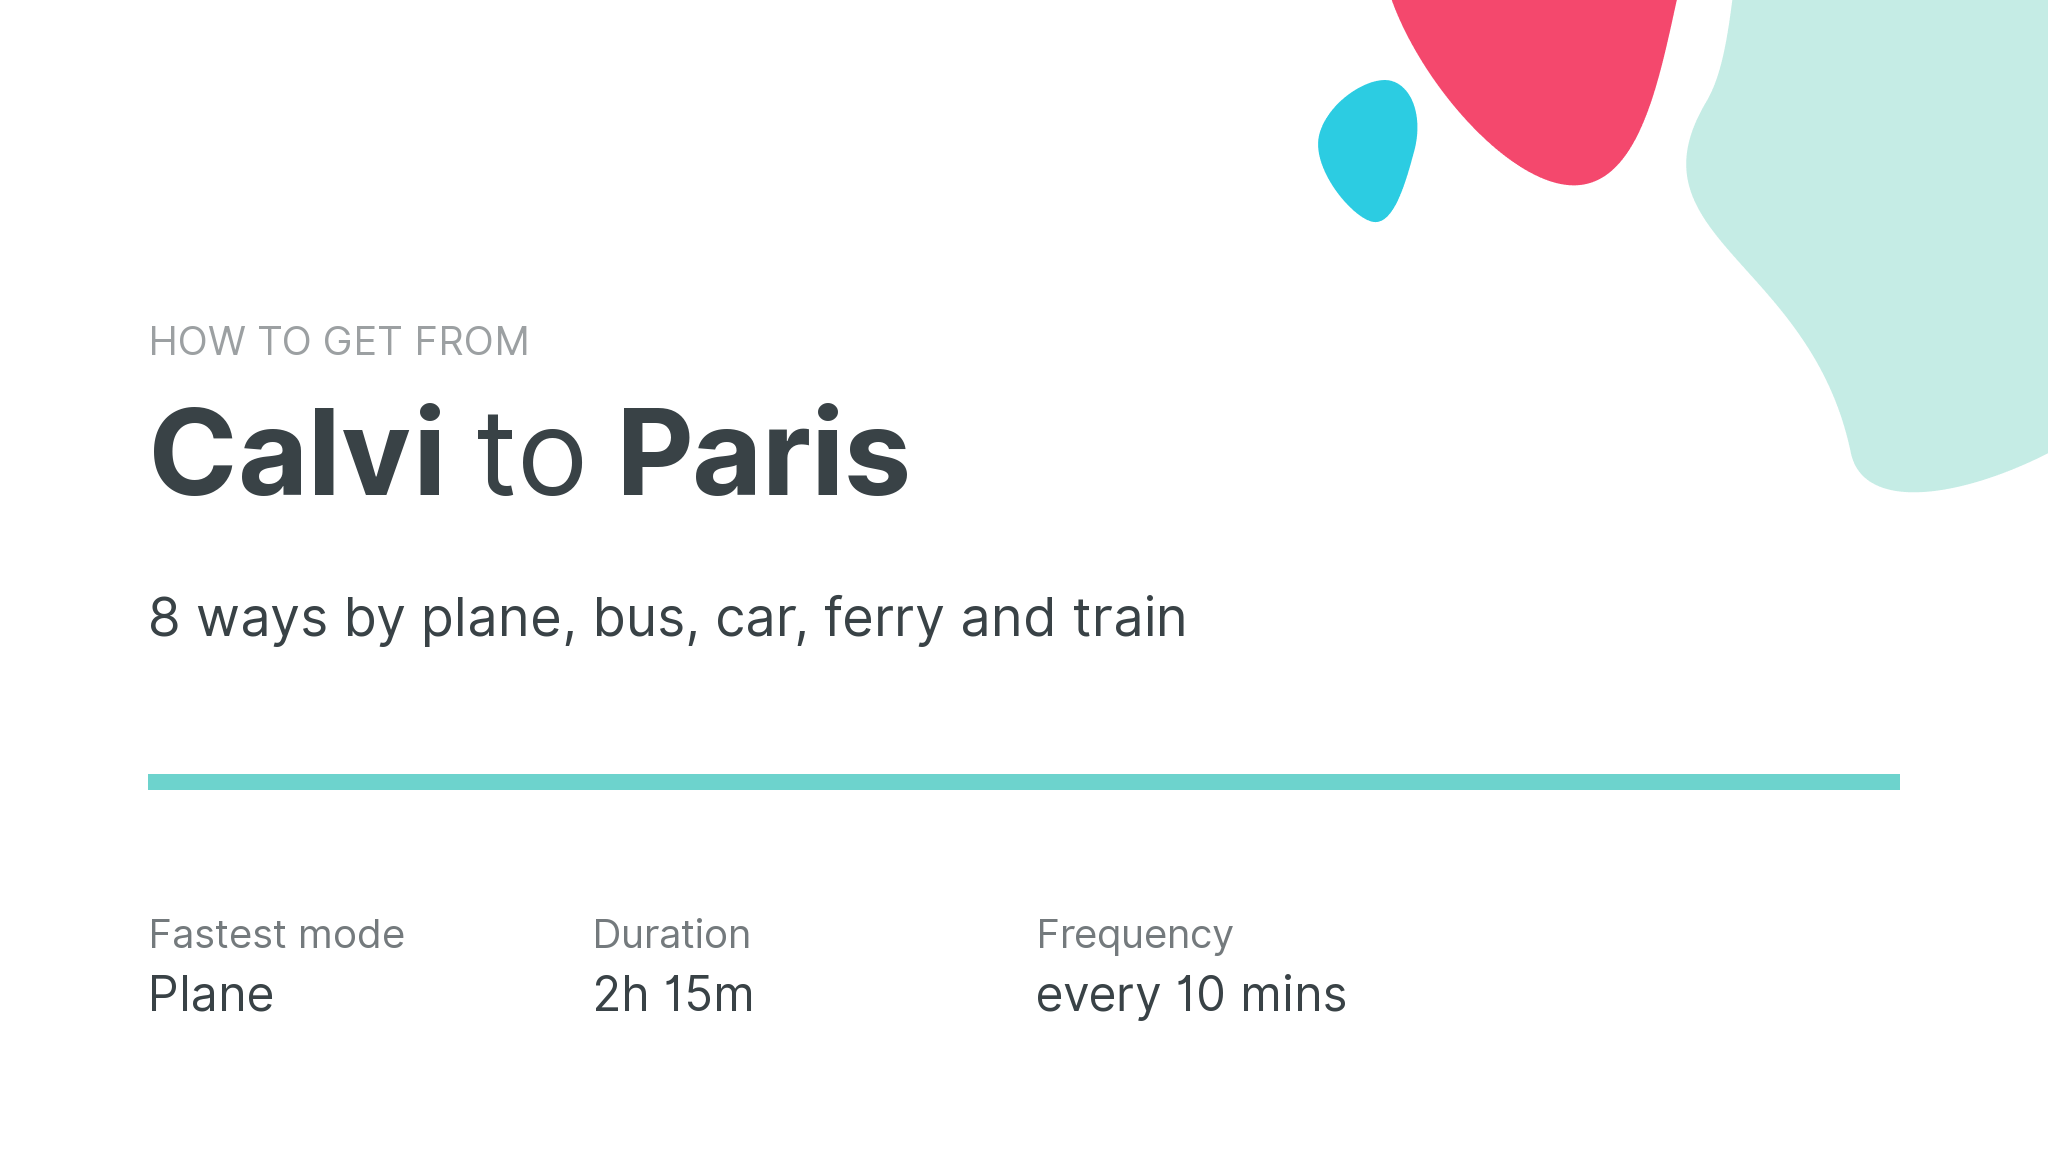 How do I get from Calvi to Paris